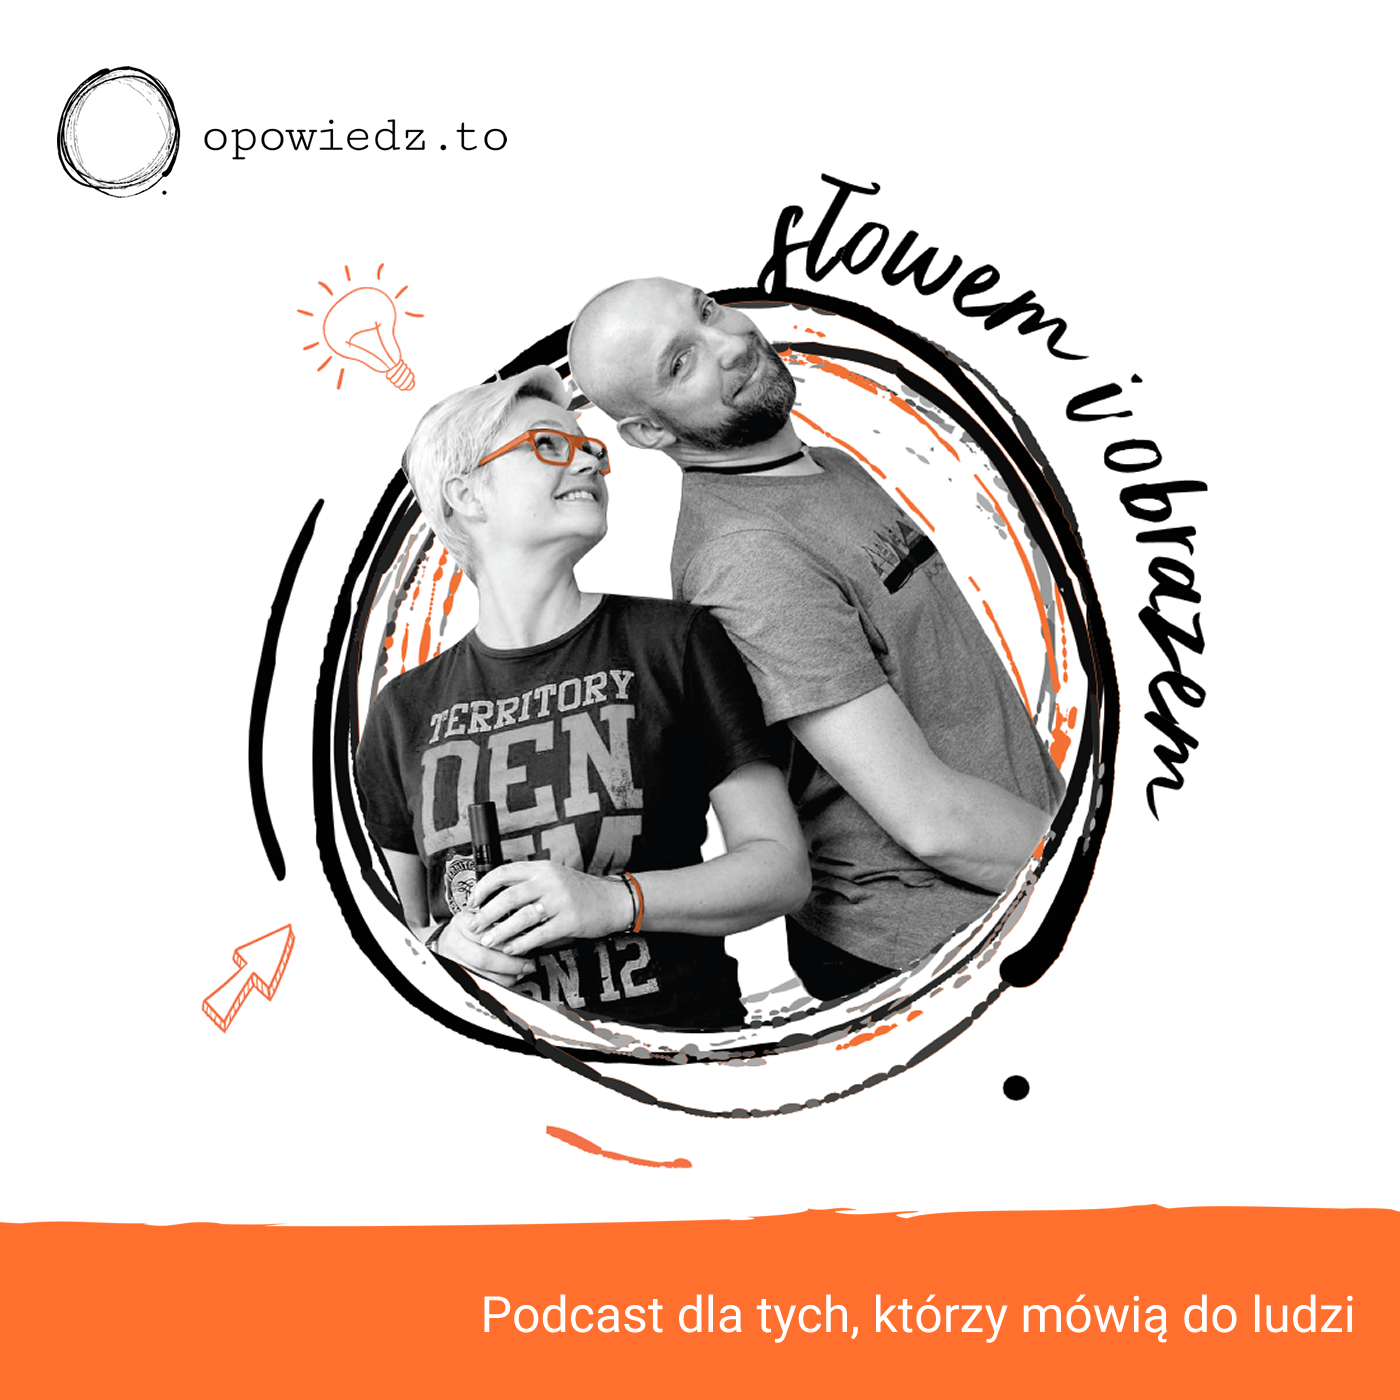 cover art for Opowiadania, bazgroły, Wiedźmin i podcasty, czyli Opowiedz.to